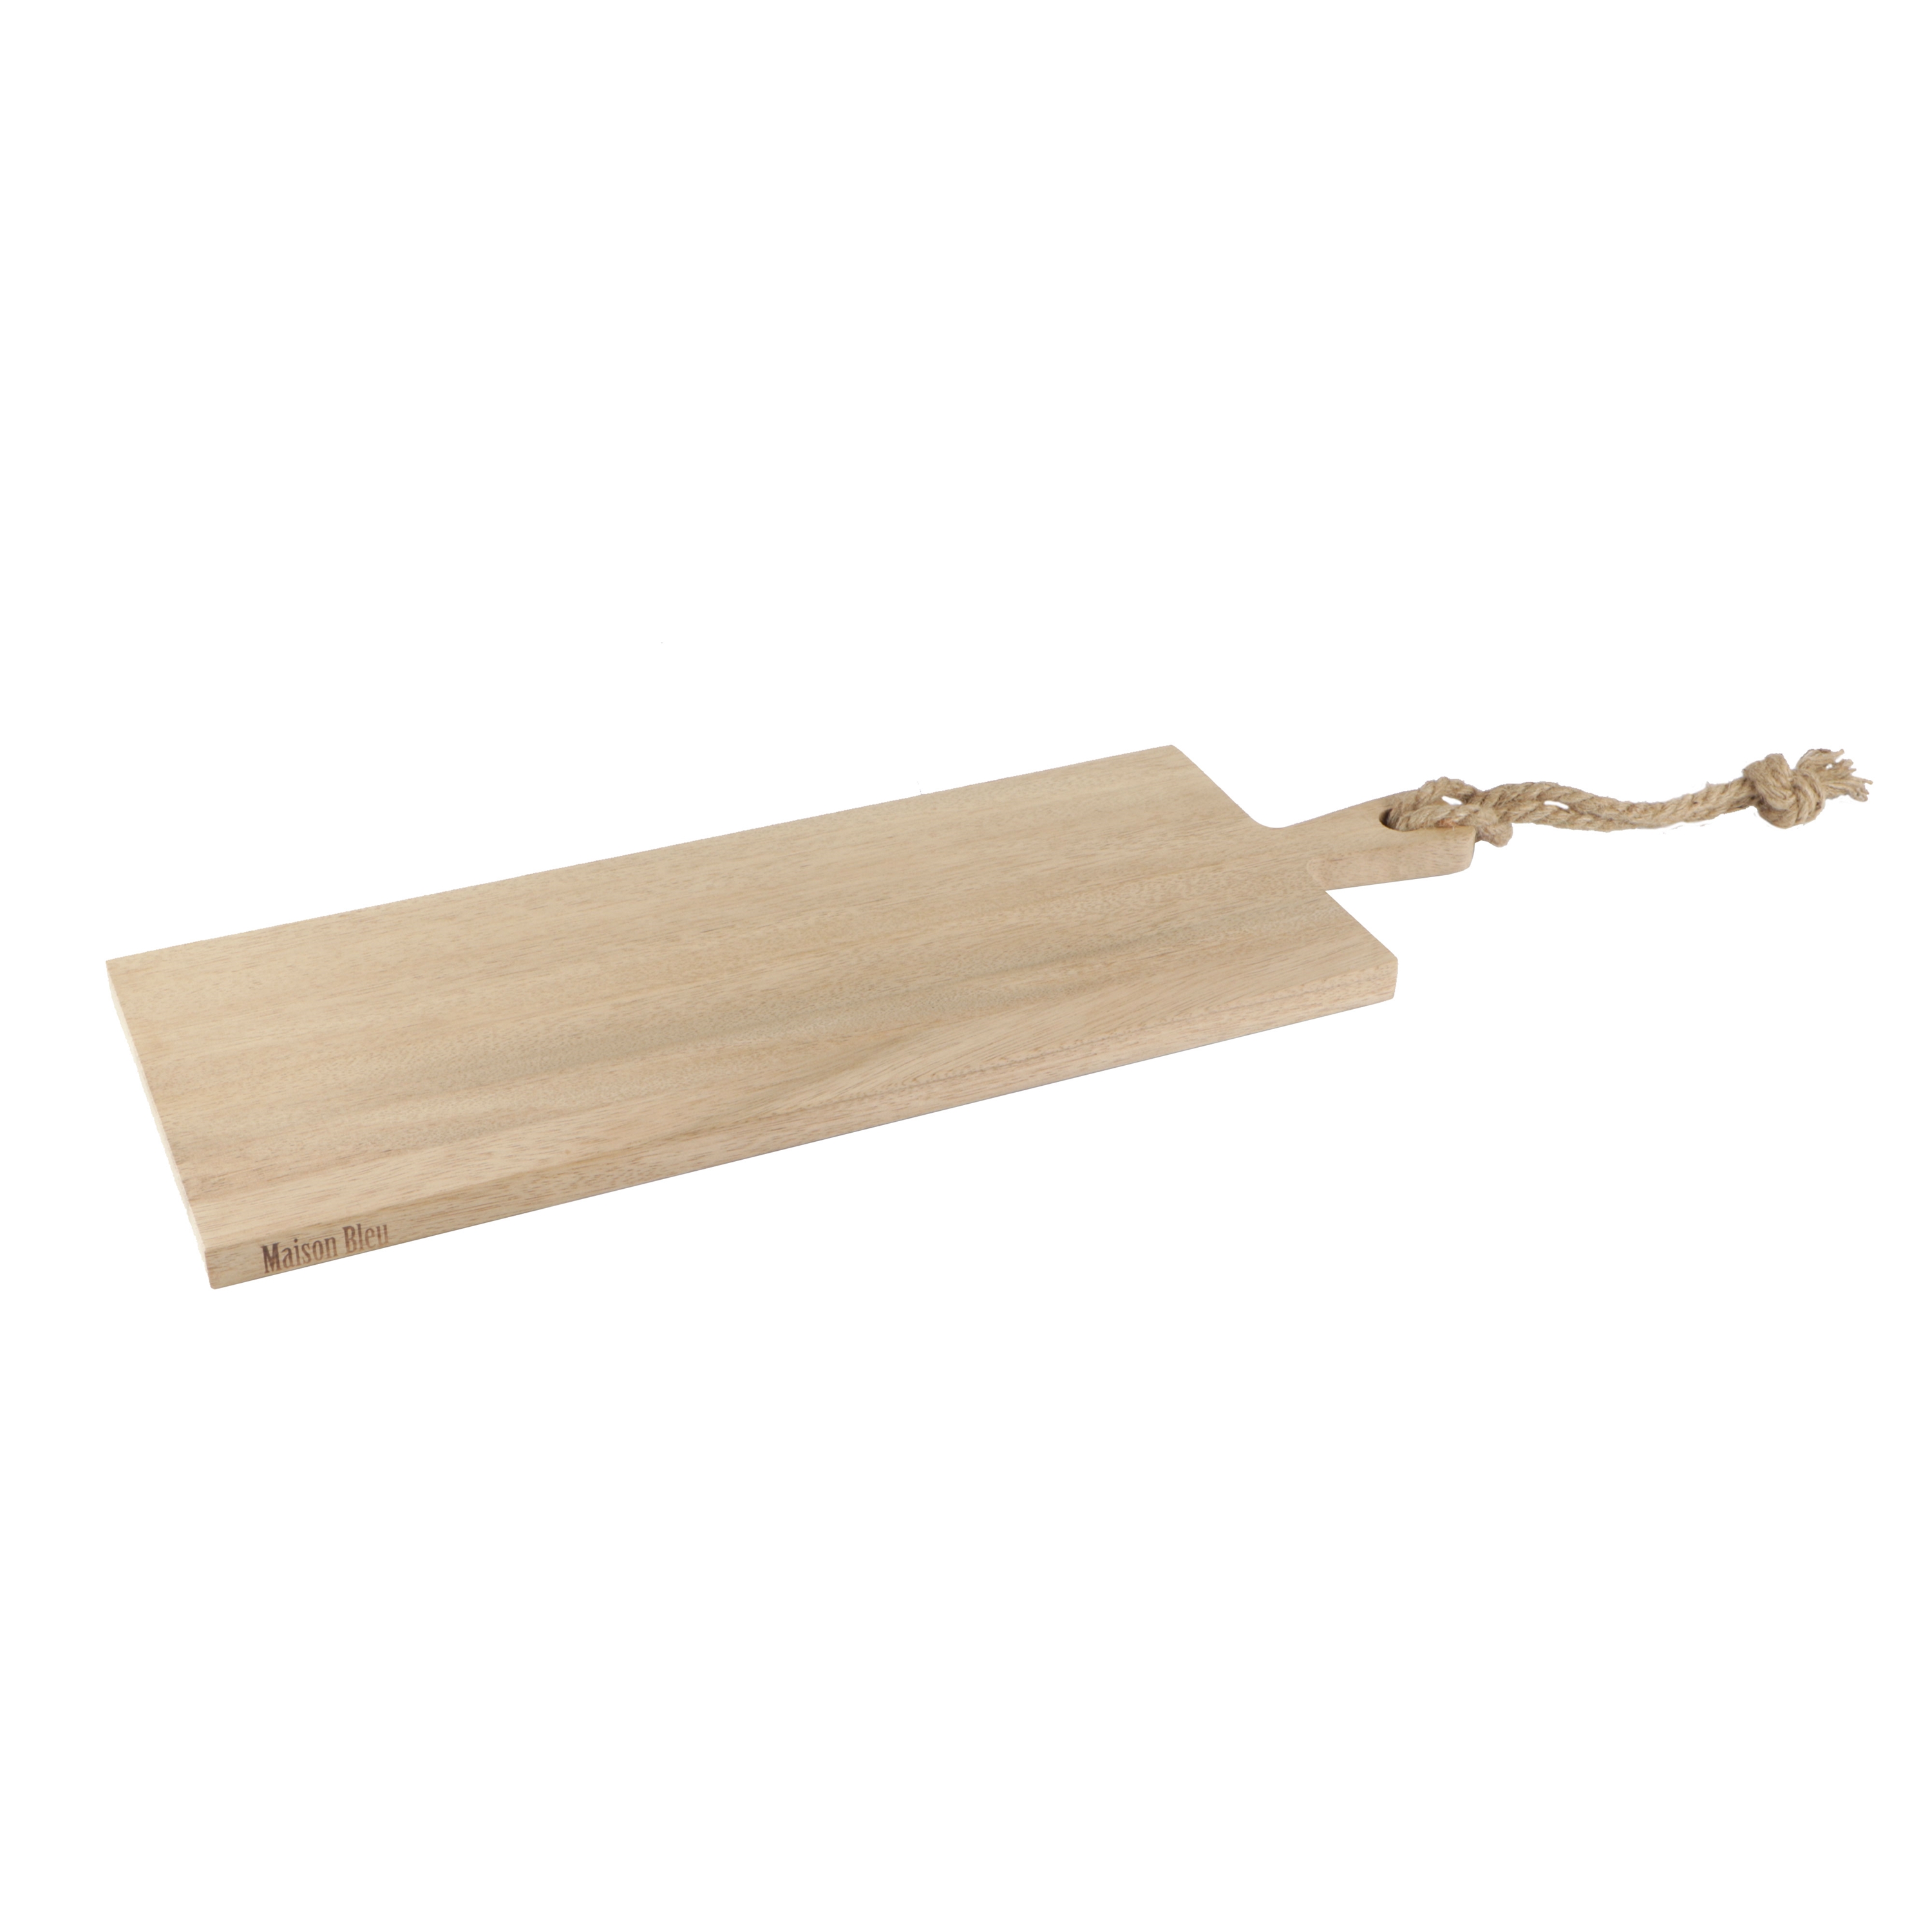 Picture of Walnoot houten plank 59x20x2 cm met touw